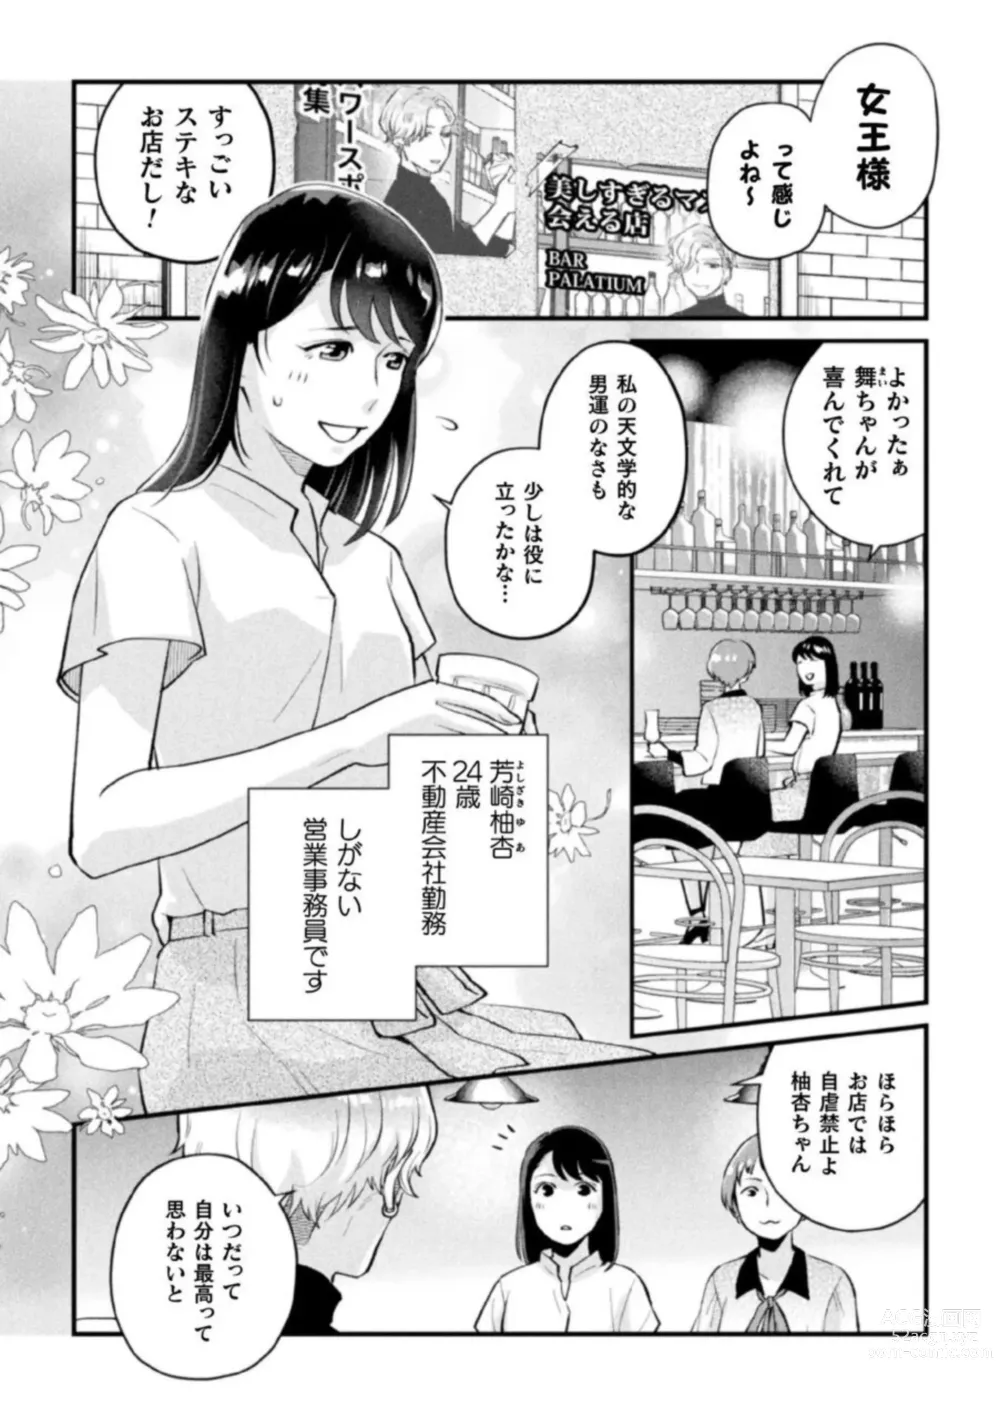 Page 4 of manga Shokora Shukureansorojīshokorashukureansorojī Docchi ga Suki? Kireina o Nīsan ni Aisare Ecchi Vol.2